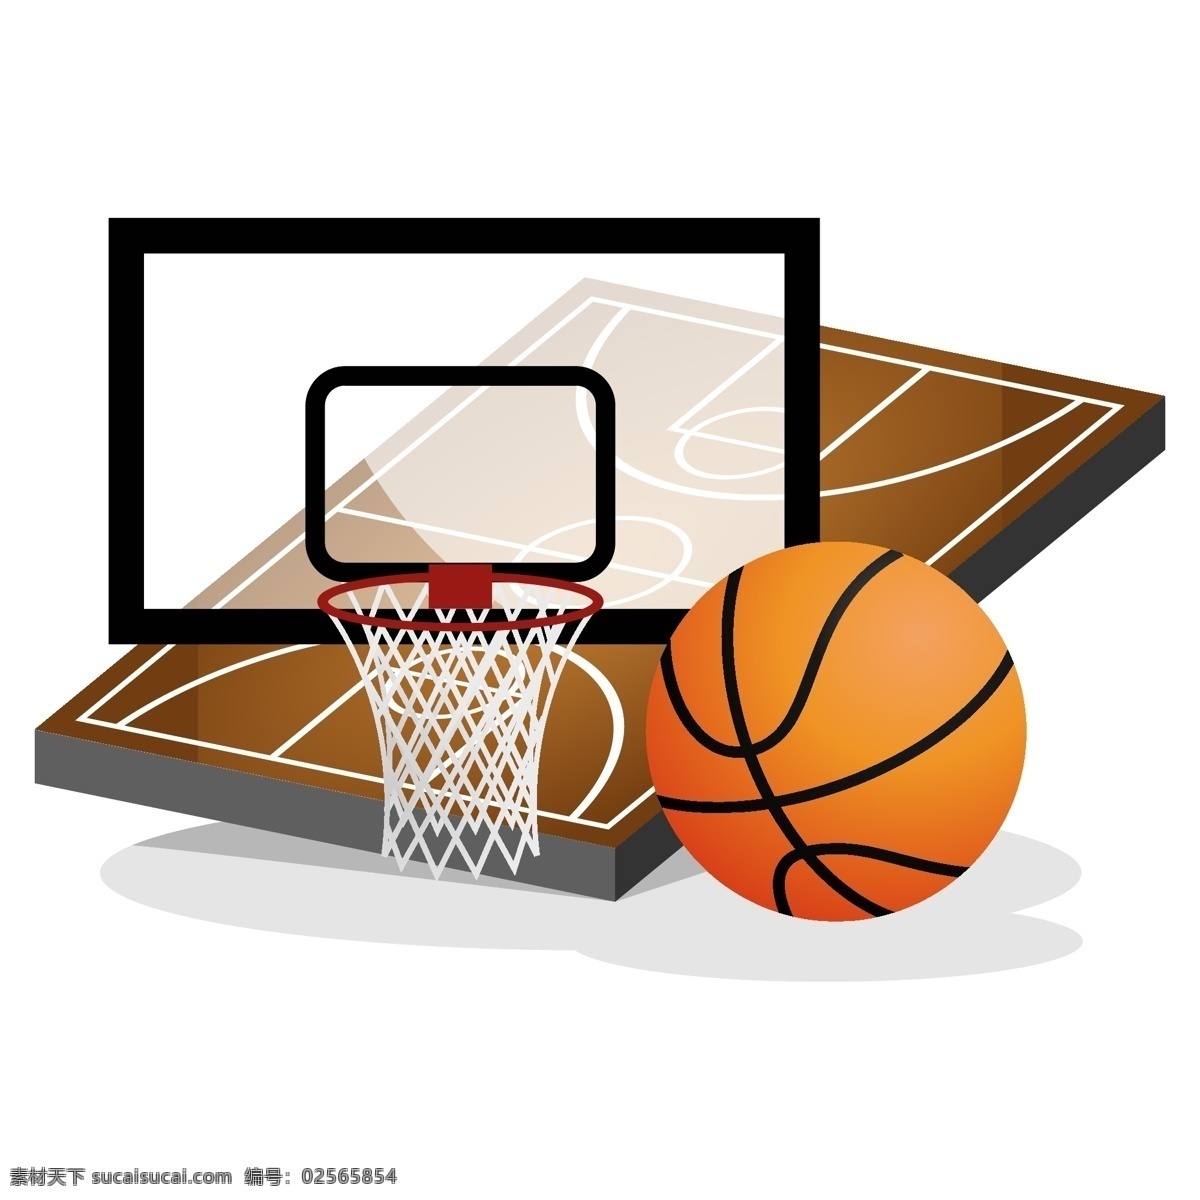 矢量 篮球 球场 篮球主题 球队 标志logo 篮球素材 篮筐 图标 矢量图 卡通插画 运动矢量 扁平化 插画设计 装饰图案 简约 篮球元素 篮球场 运动 健身